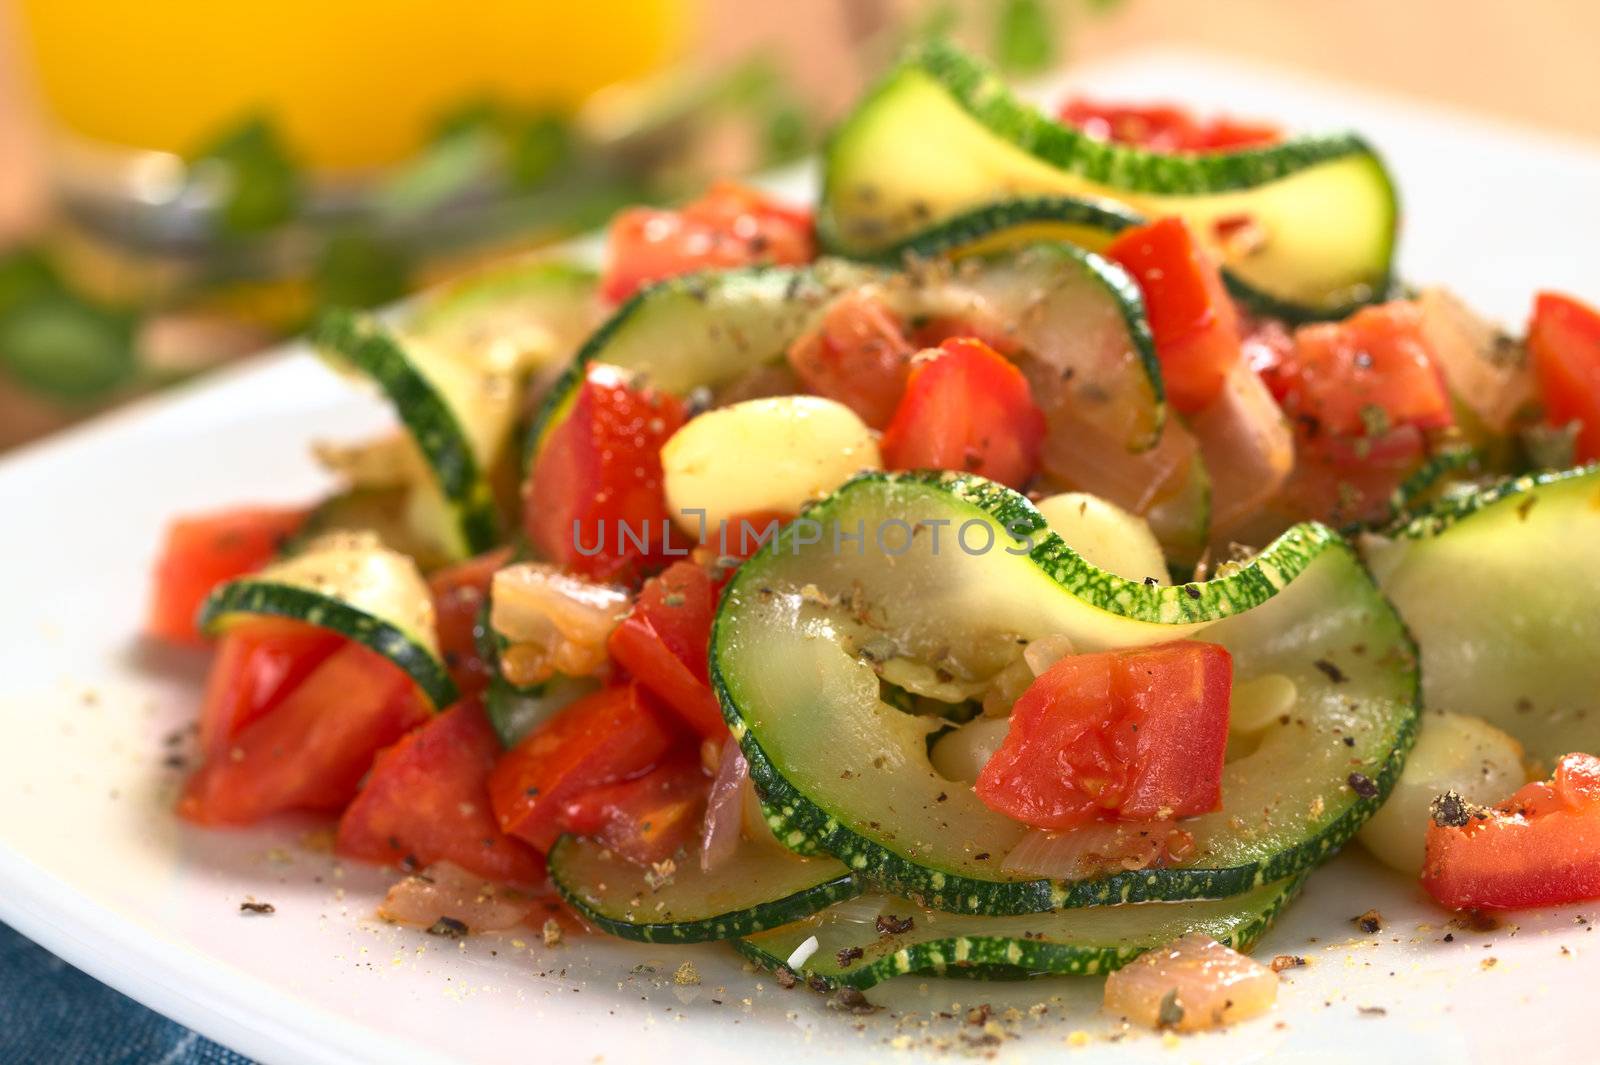 Zucchini, Tomato and Corn Dish by ildi